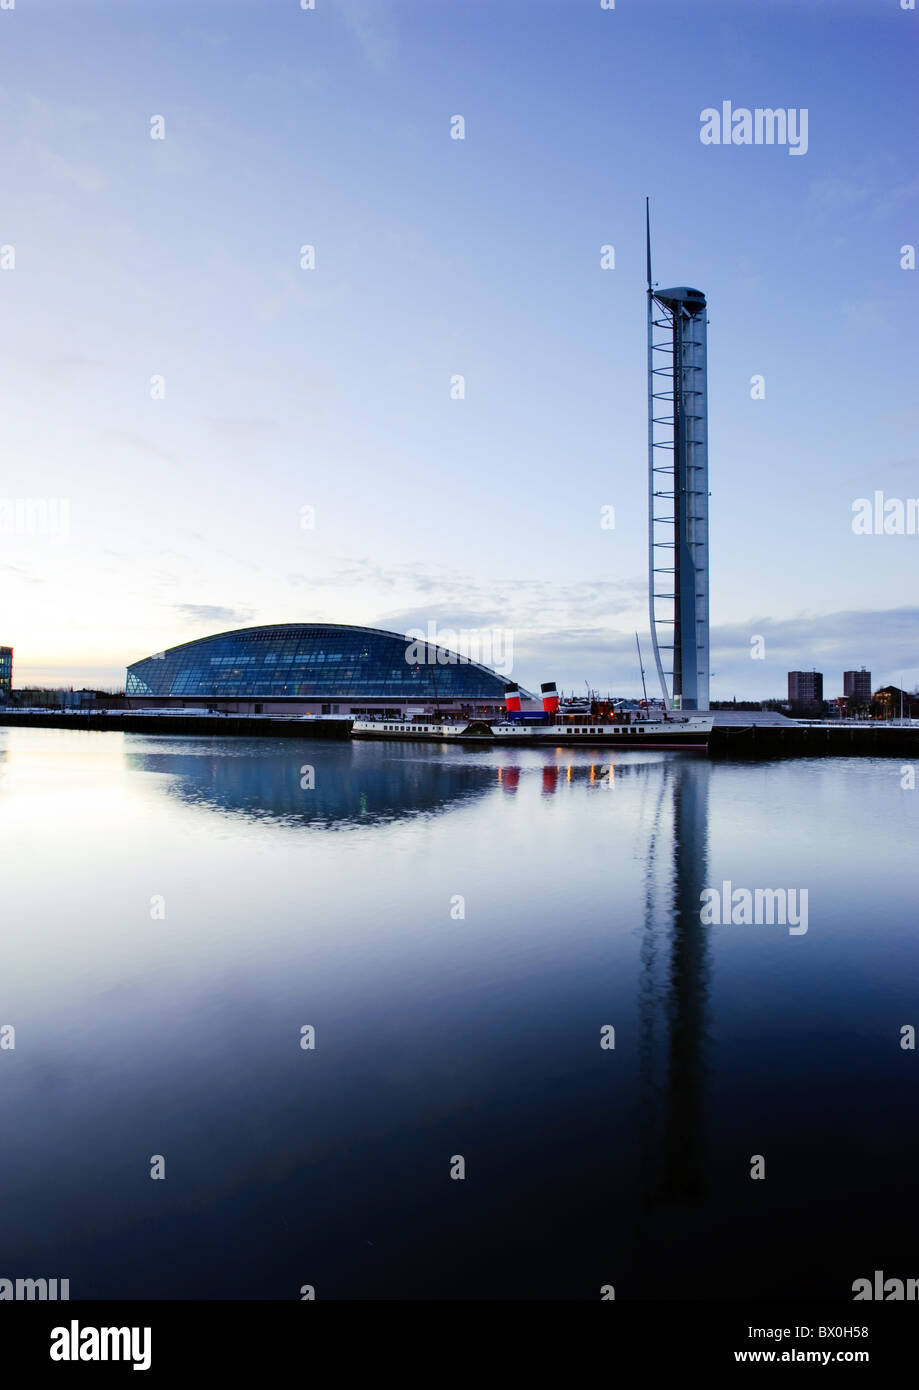 Glasgow Science Centre et tour de la Clyde, Glasgow, Ecosse, Royaume-Uni. Banque D'Images